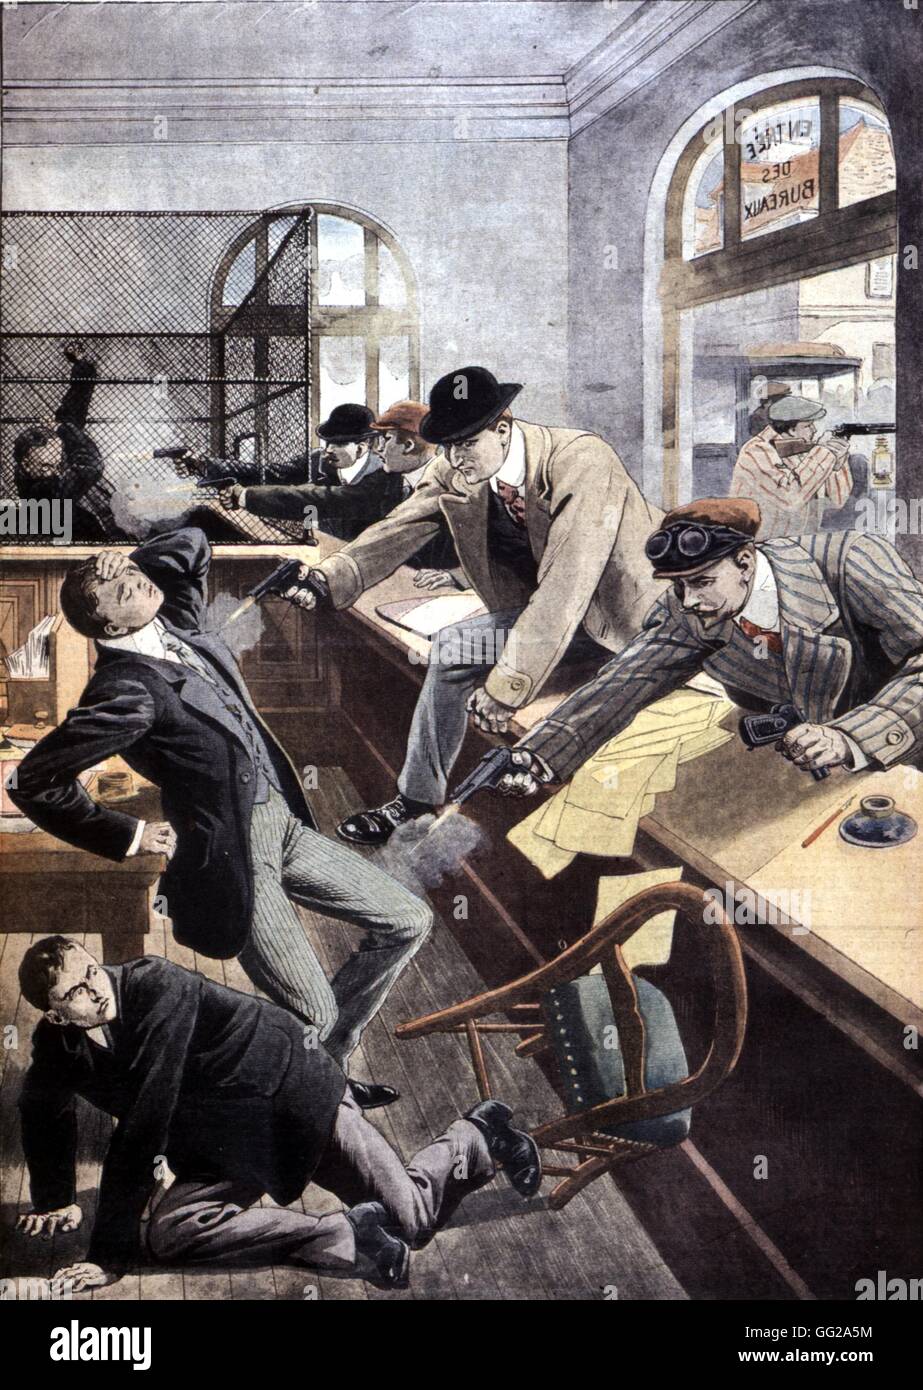 Tochtergesellschaft der Société Générale Bank angegriffen von Räubern in Chantilly, Frankreich, veröffentlicht in der Zeitung "Le Petit Journal". 1912 Frankreich Rousseau Sammlung Stockfoto